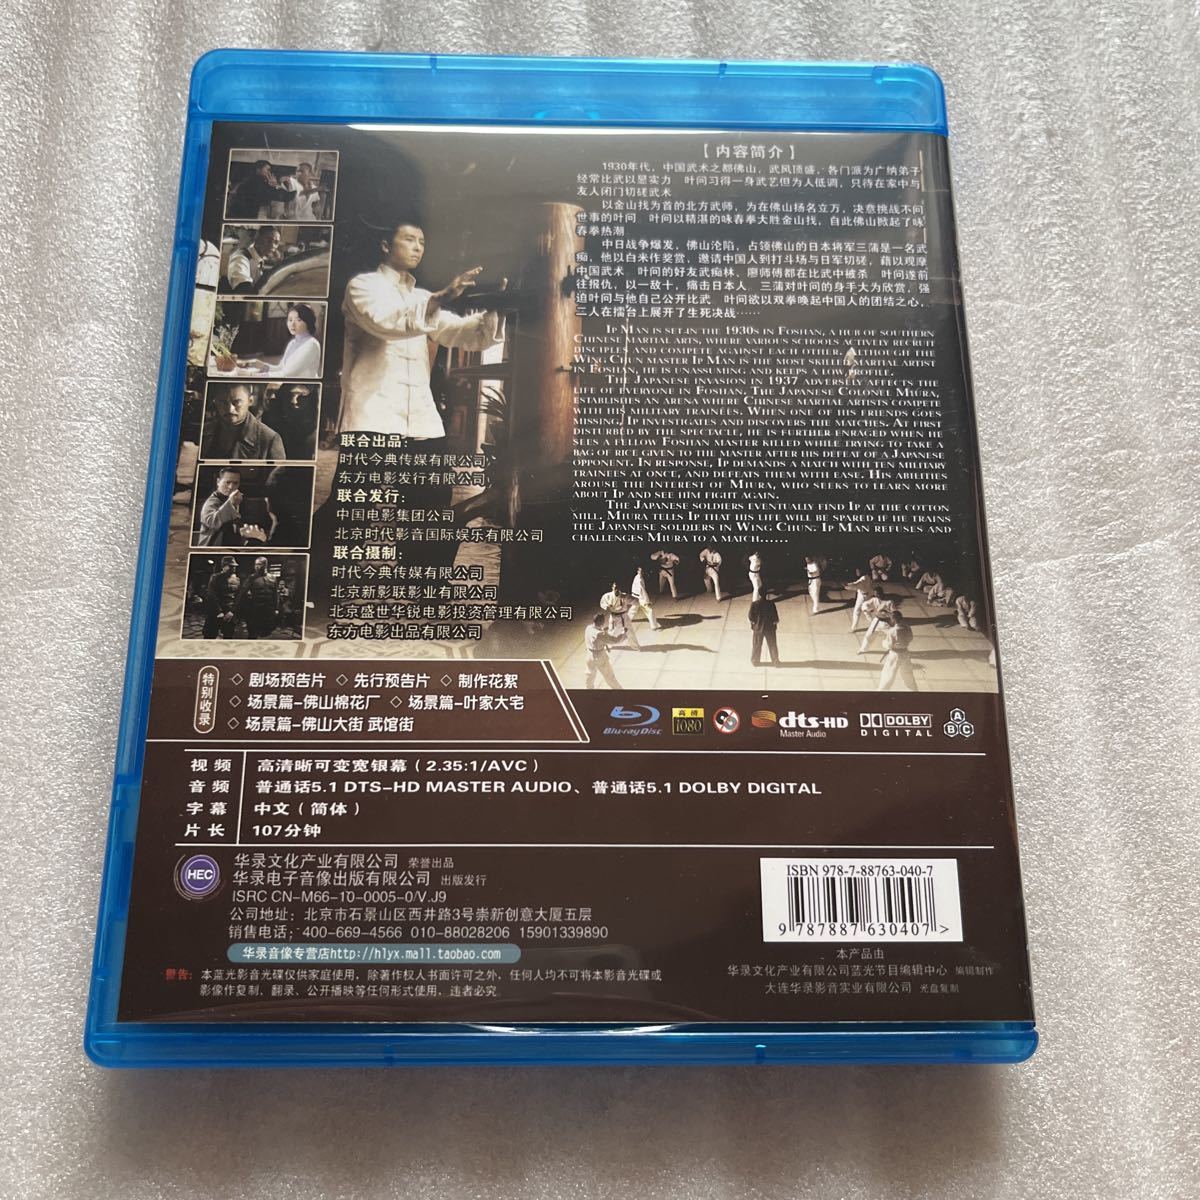 ブルーレイ 叶河 Ip MAN 中国 映画 中国語 Blu-ray Blu-ray Disc 外国 映画 海外 洋画 BD ディスク_画像2